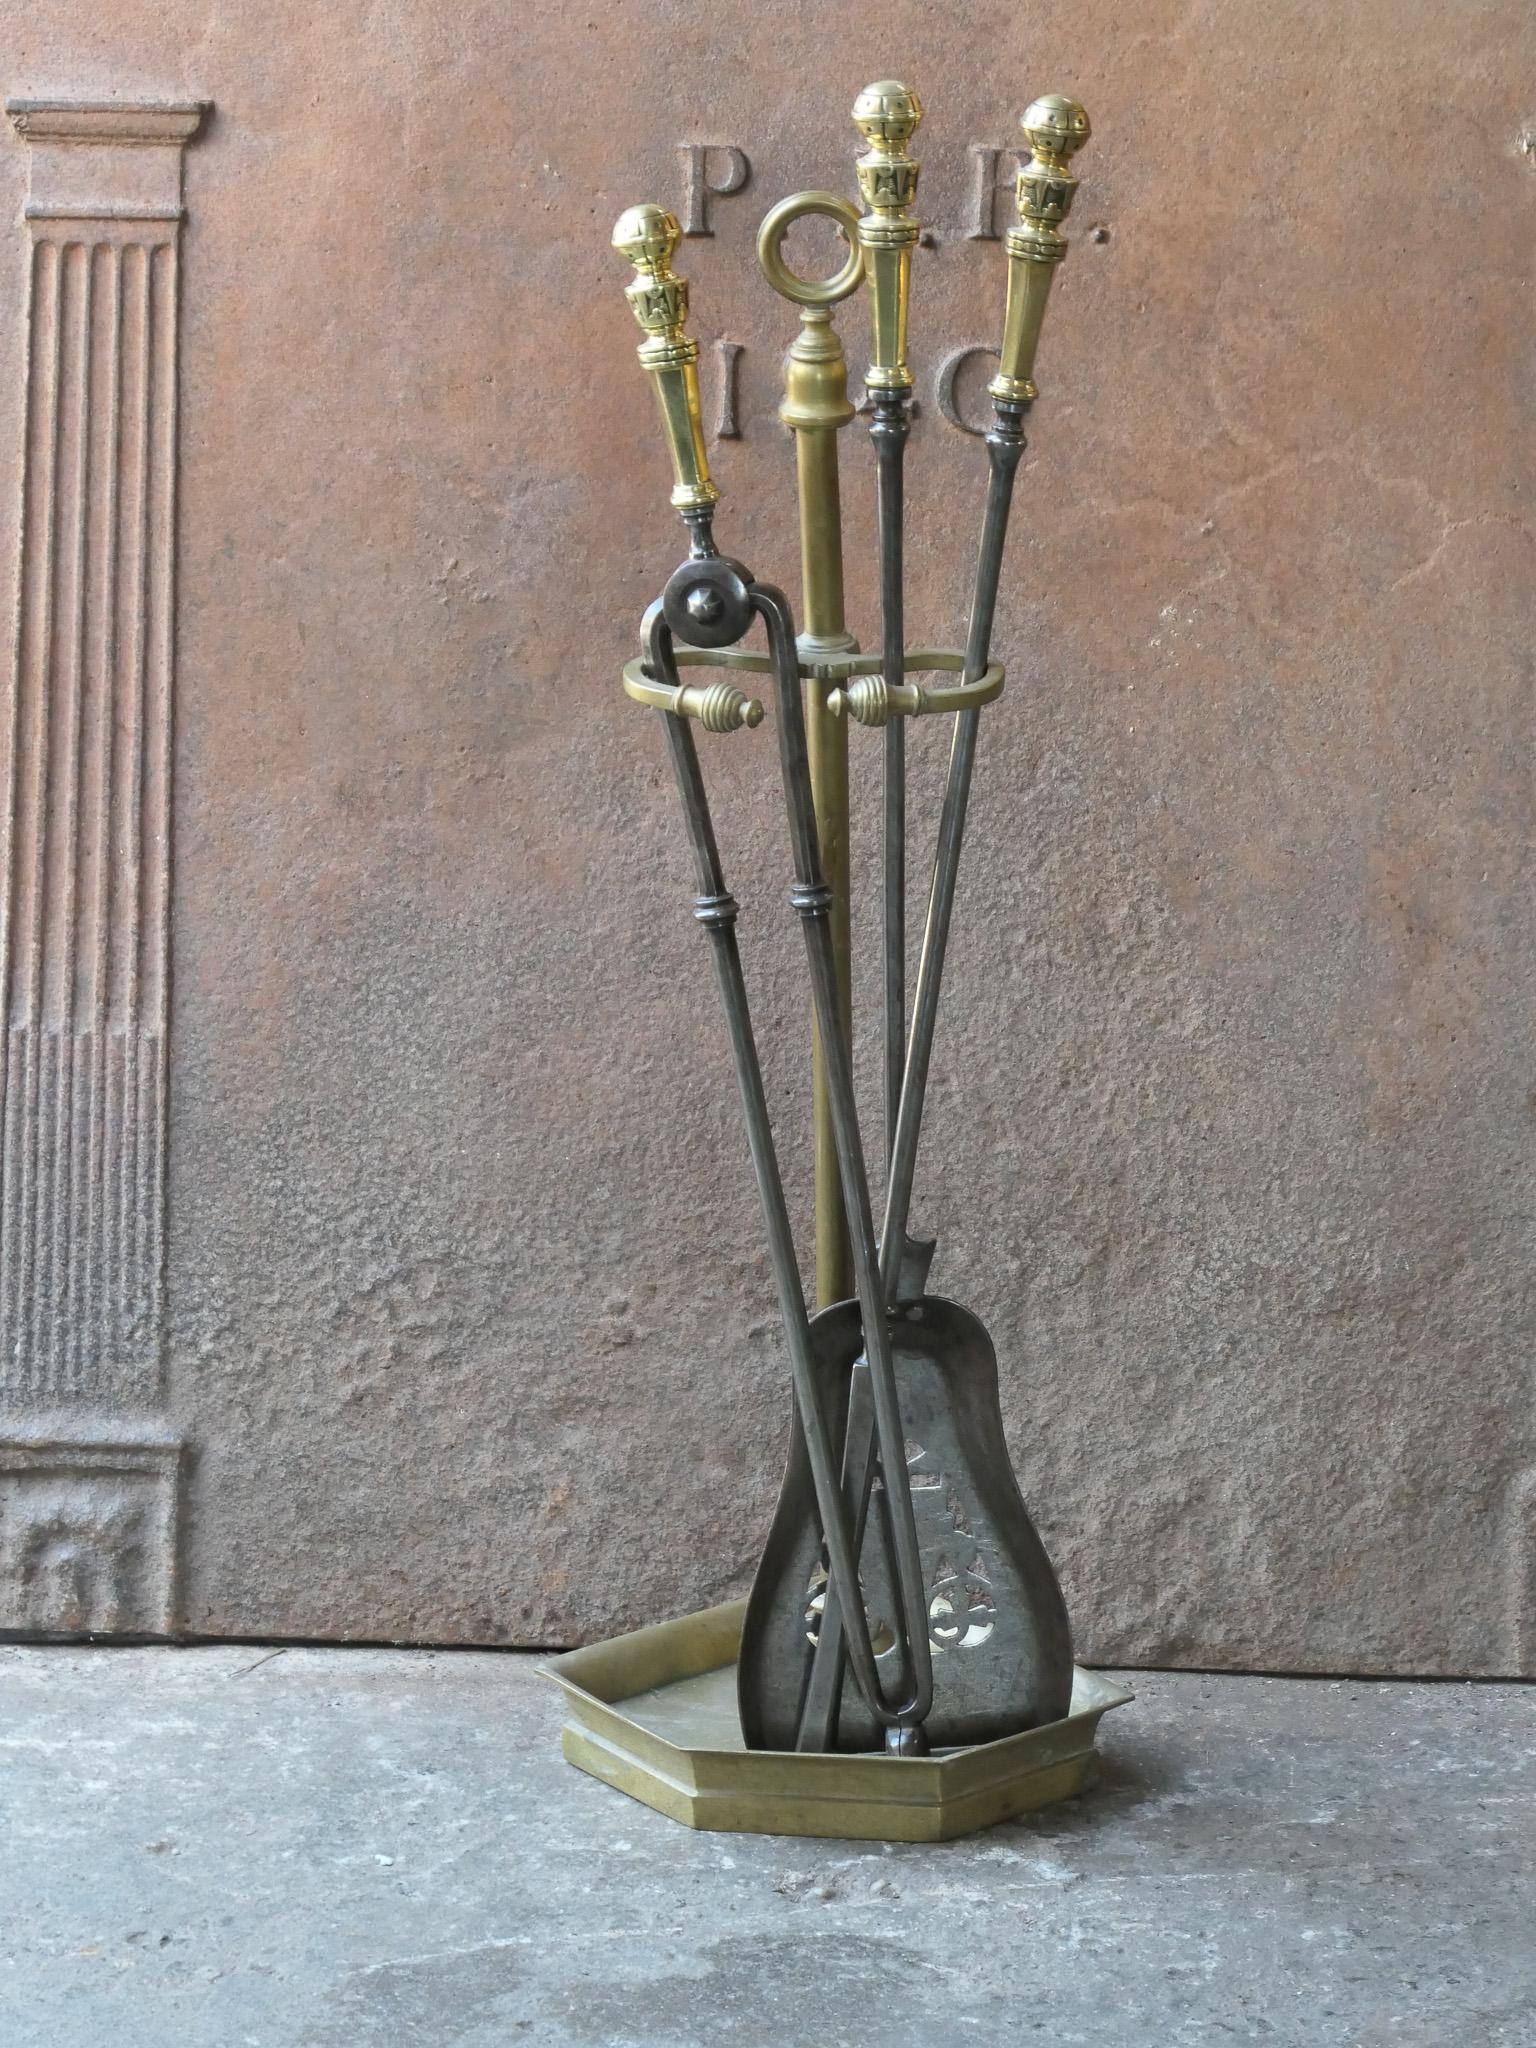 Ensemble d'outils pour cheminée du 19e siècle, d'époque victorienne anglaise. Les outils sont en fer forgé avec des poignées en laiton, tandis que le support est en laiton. L'ensemble d'outils comprend une pince, un tisonnier, une pelle et un